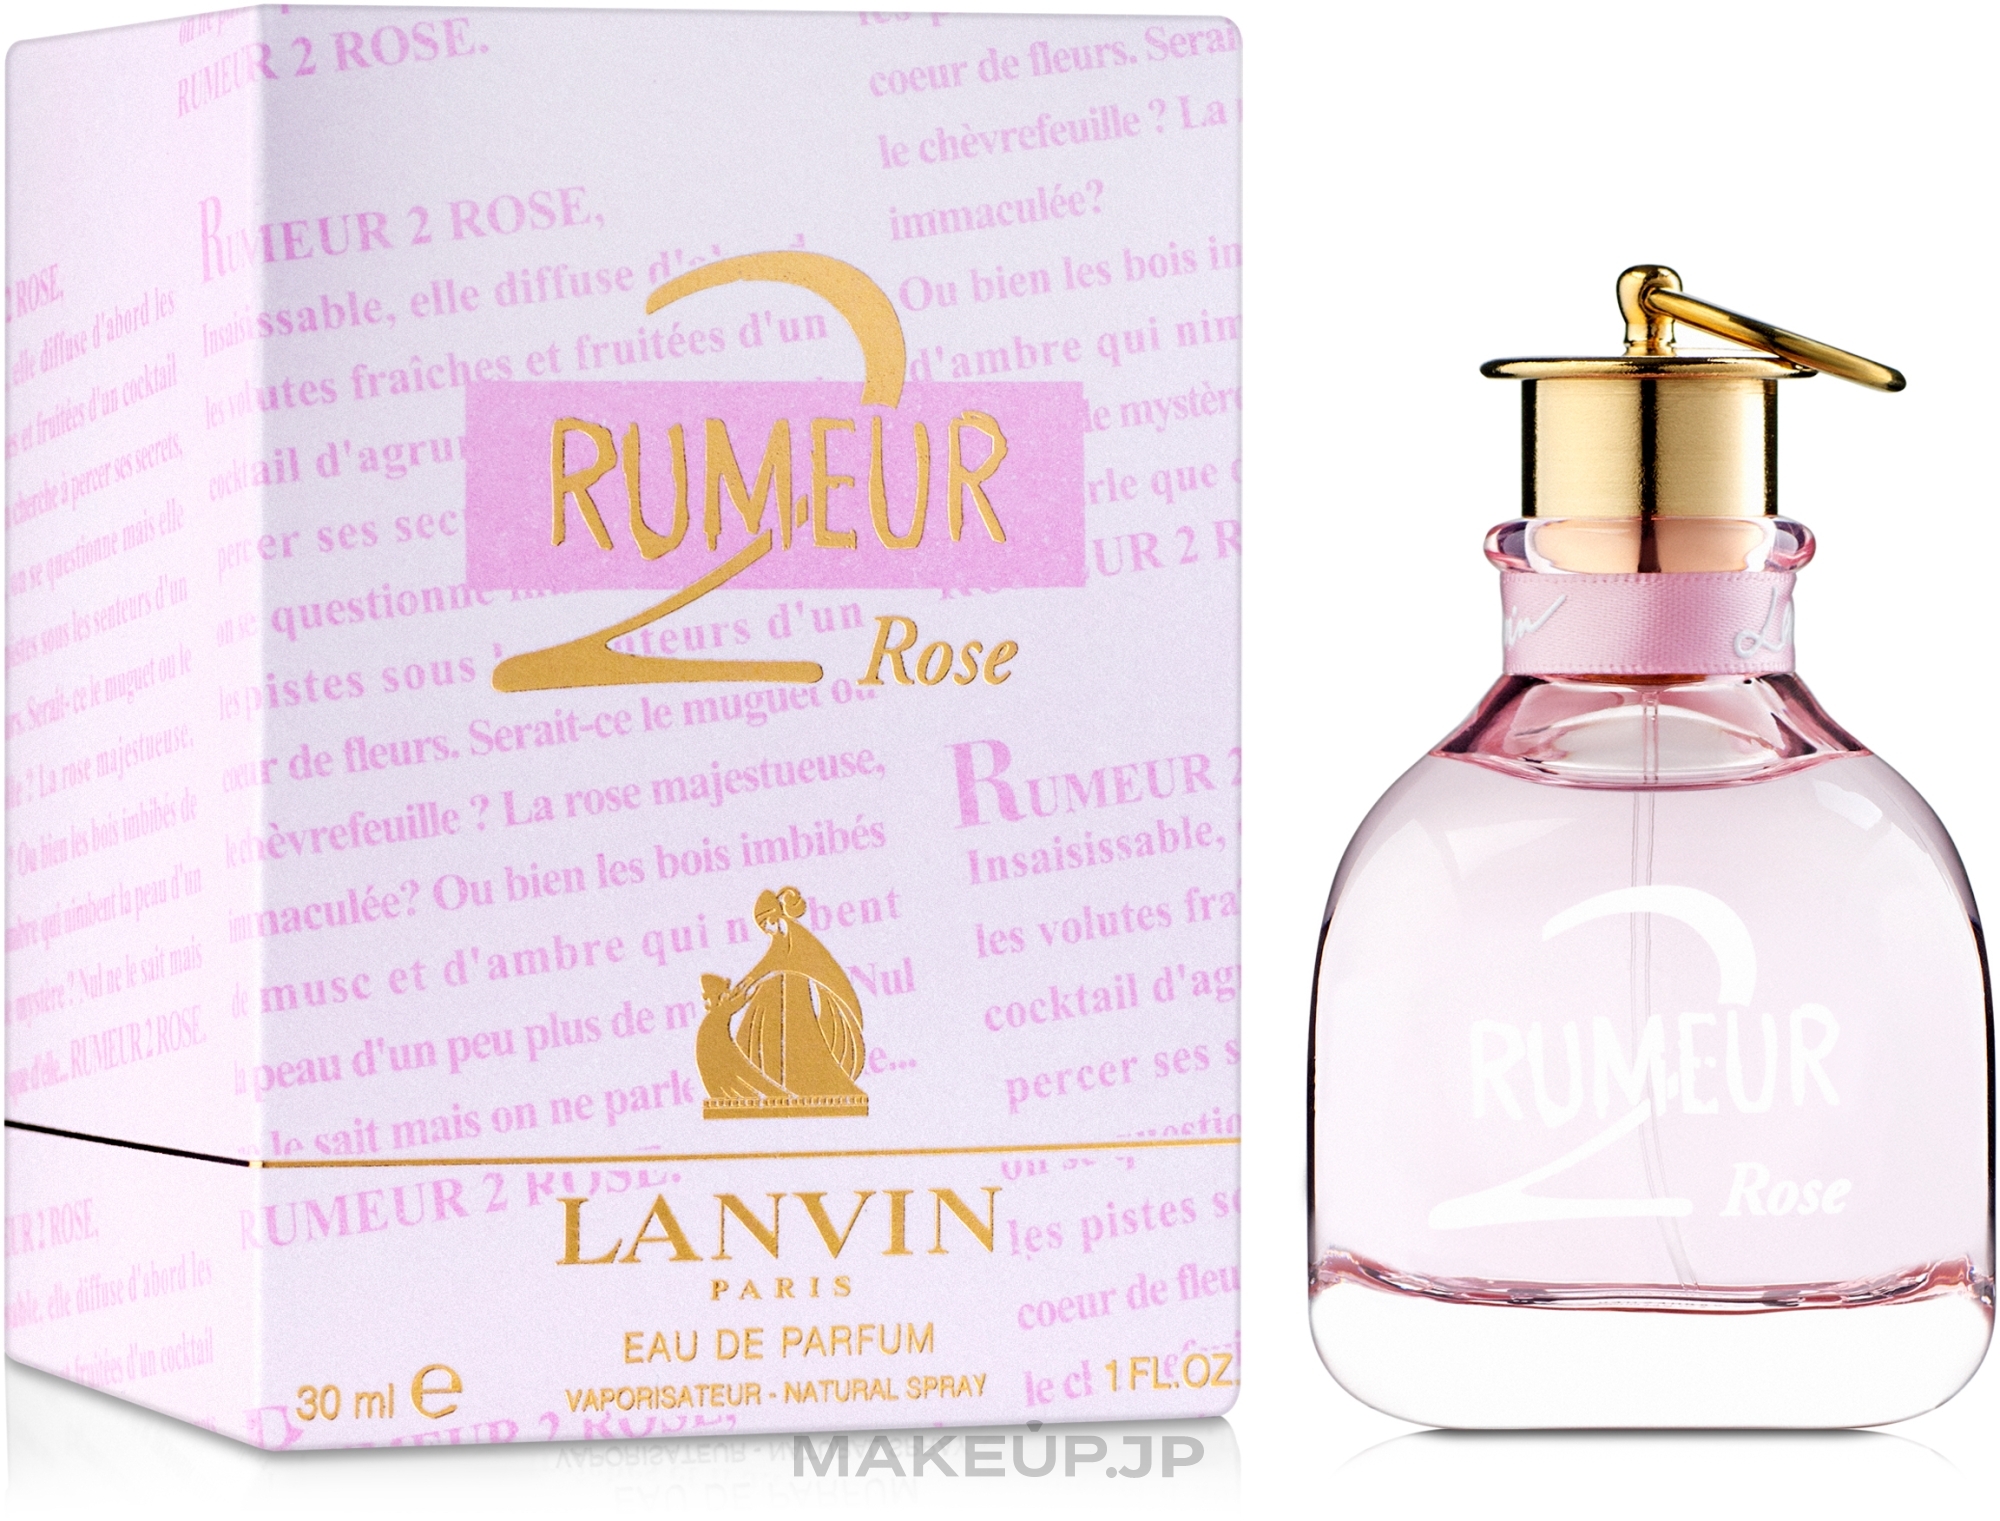 Lanvin Rumeur 2 Rose - Eau de Parfum — photo 30 ml